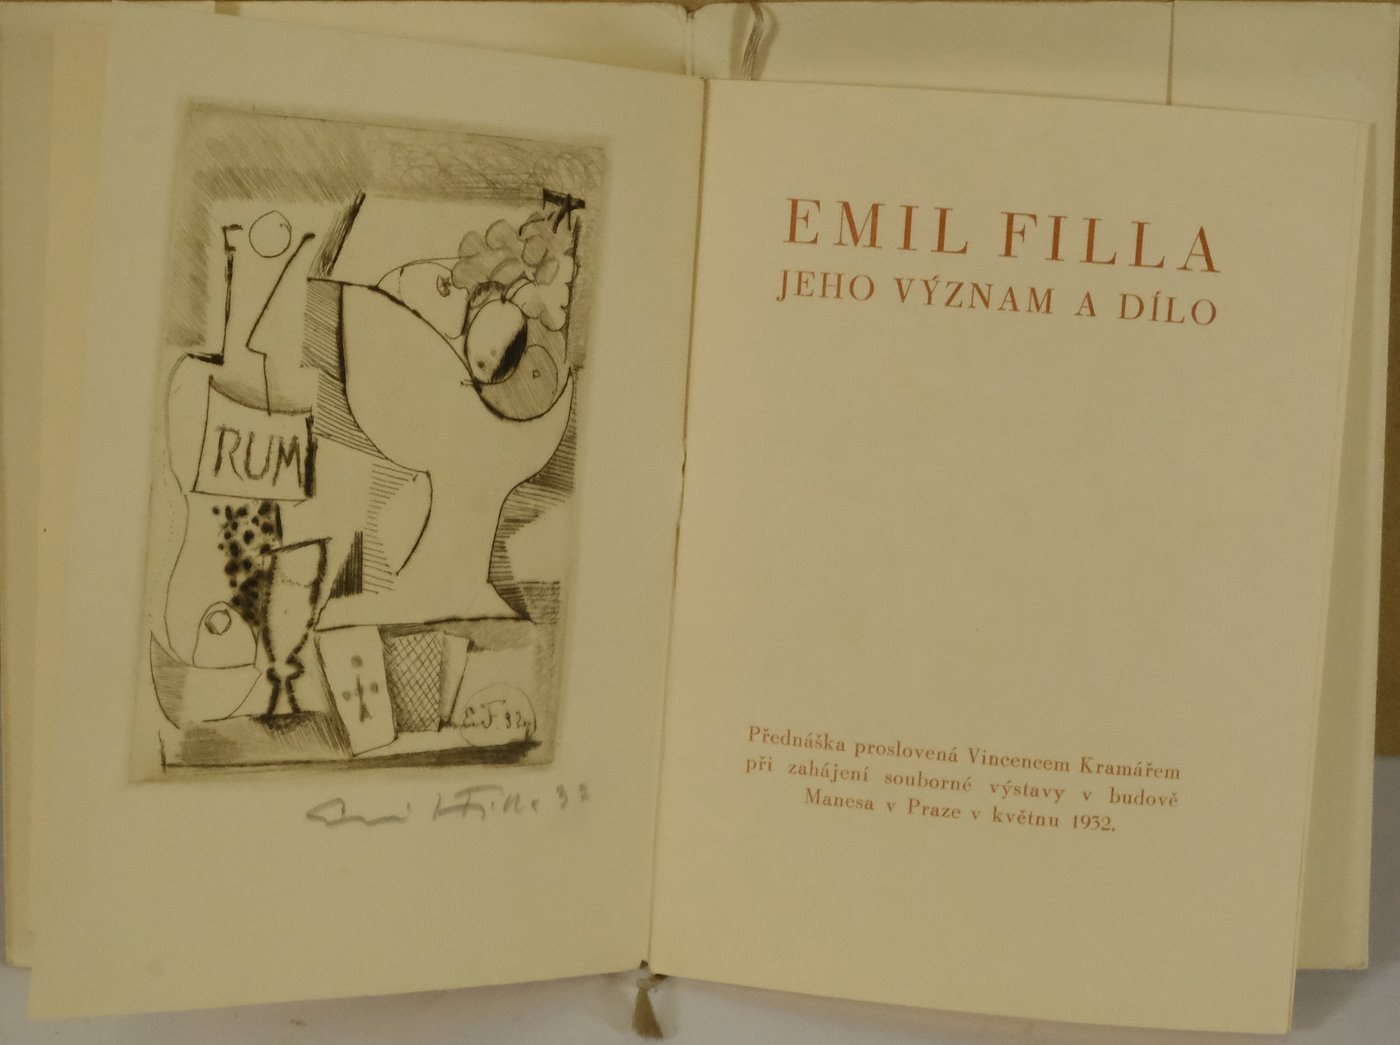 Emil Filla - Emil Filla - jeho význam a dílo